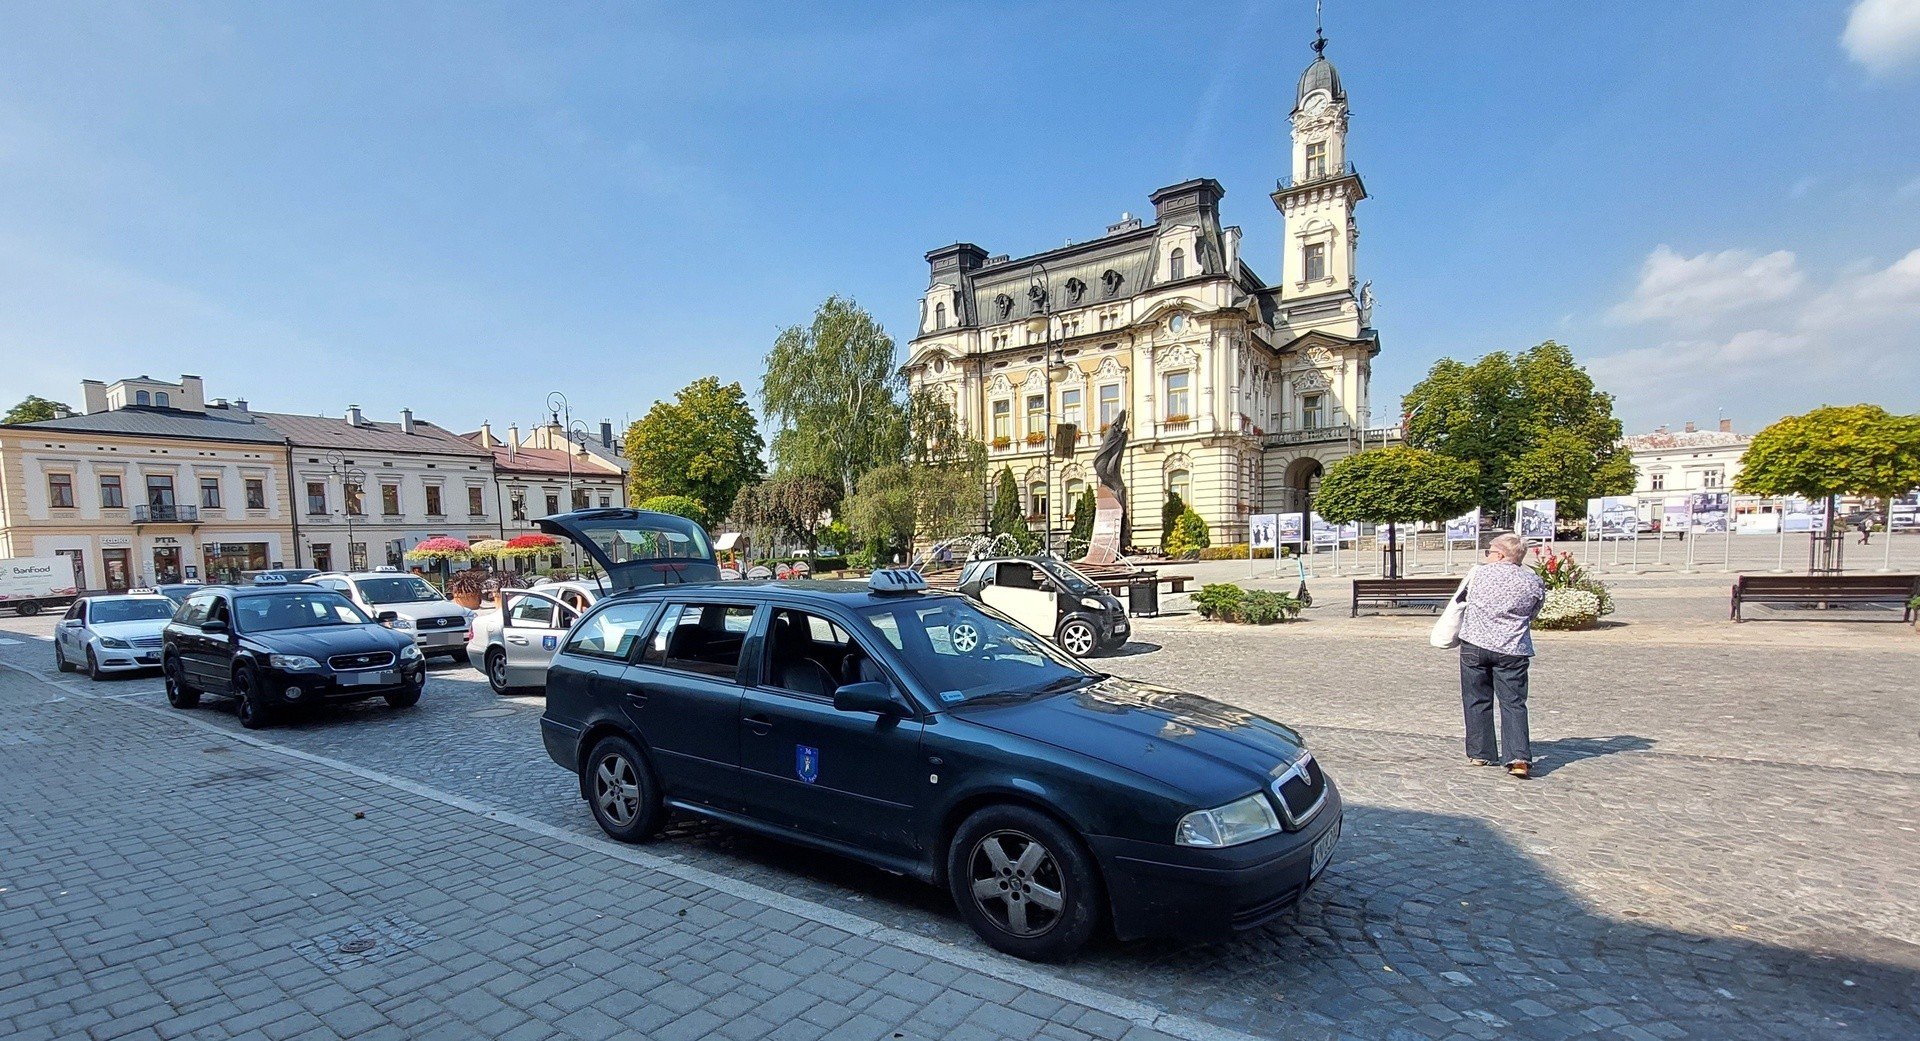 Nowy Sącz. Opłata za taxi pójdzie mocno w górę? Taksówkarze uspokajają, że  nie prędko | Gazeta Krakowska